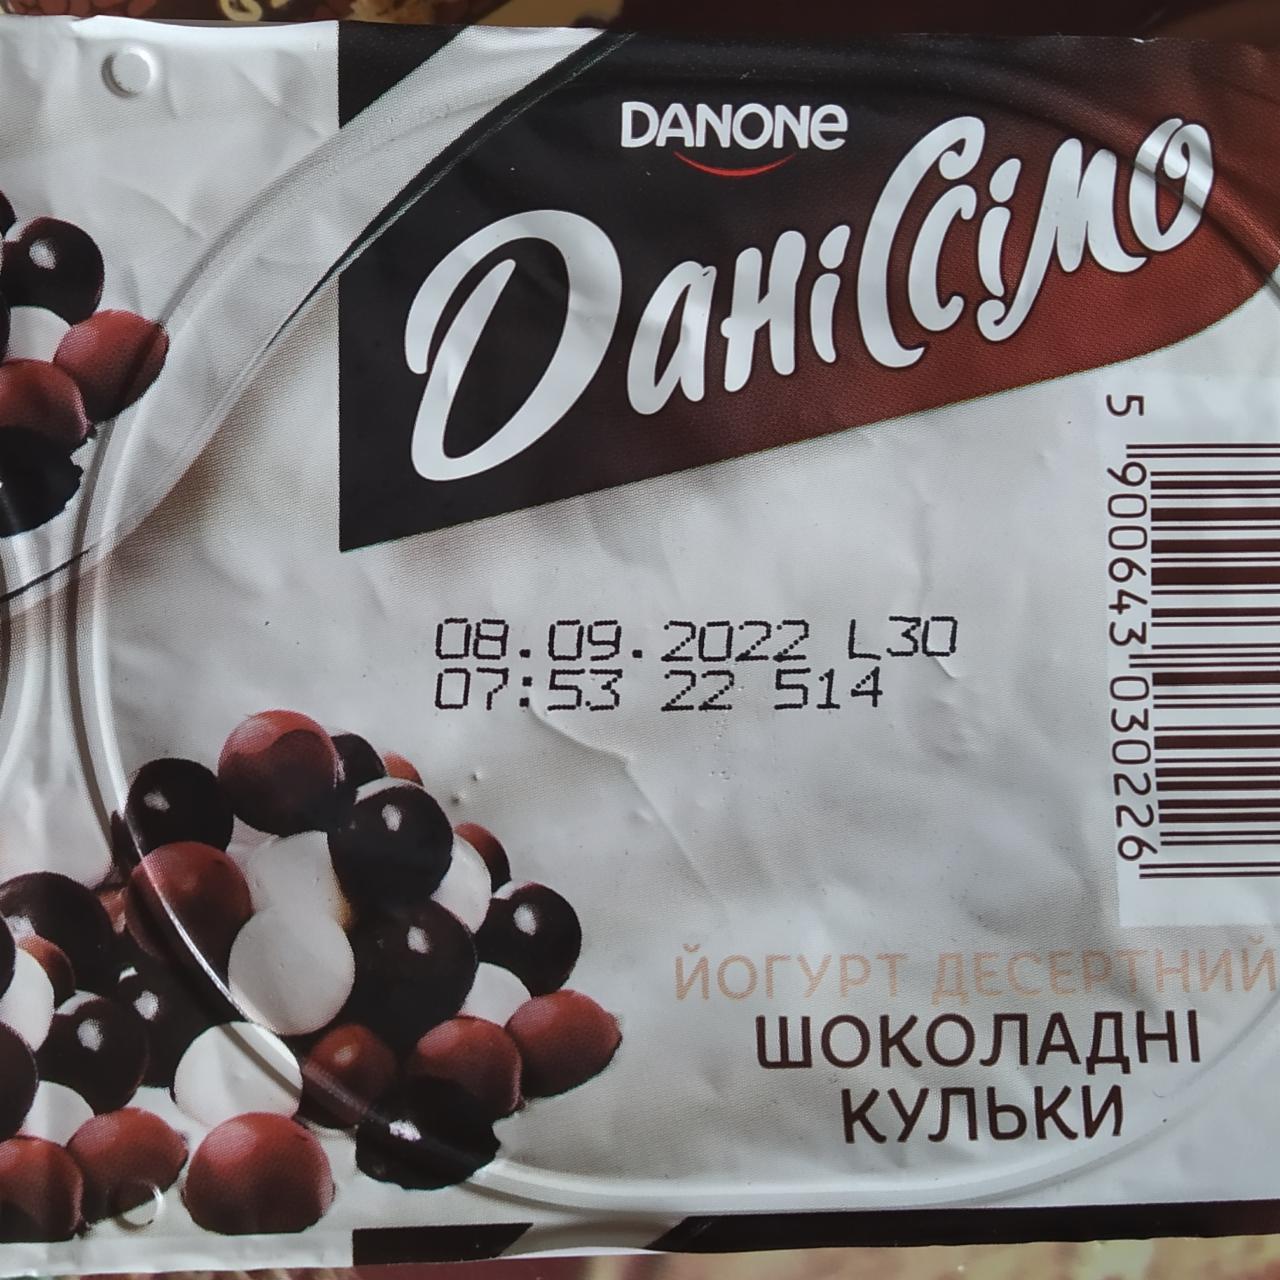 Фото - Йогурт десертный шоколадные шарики ДаниСимо Danone